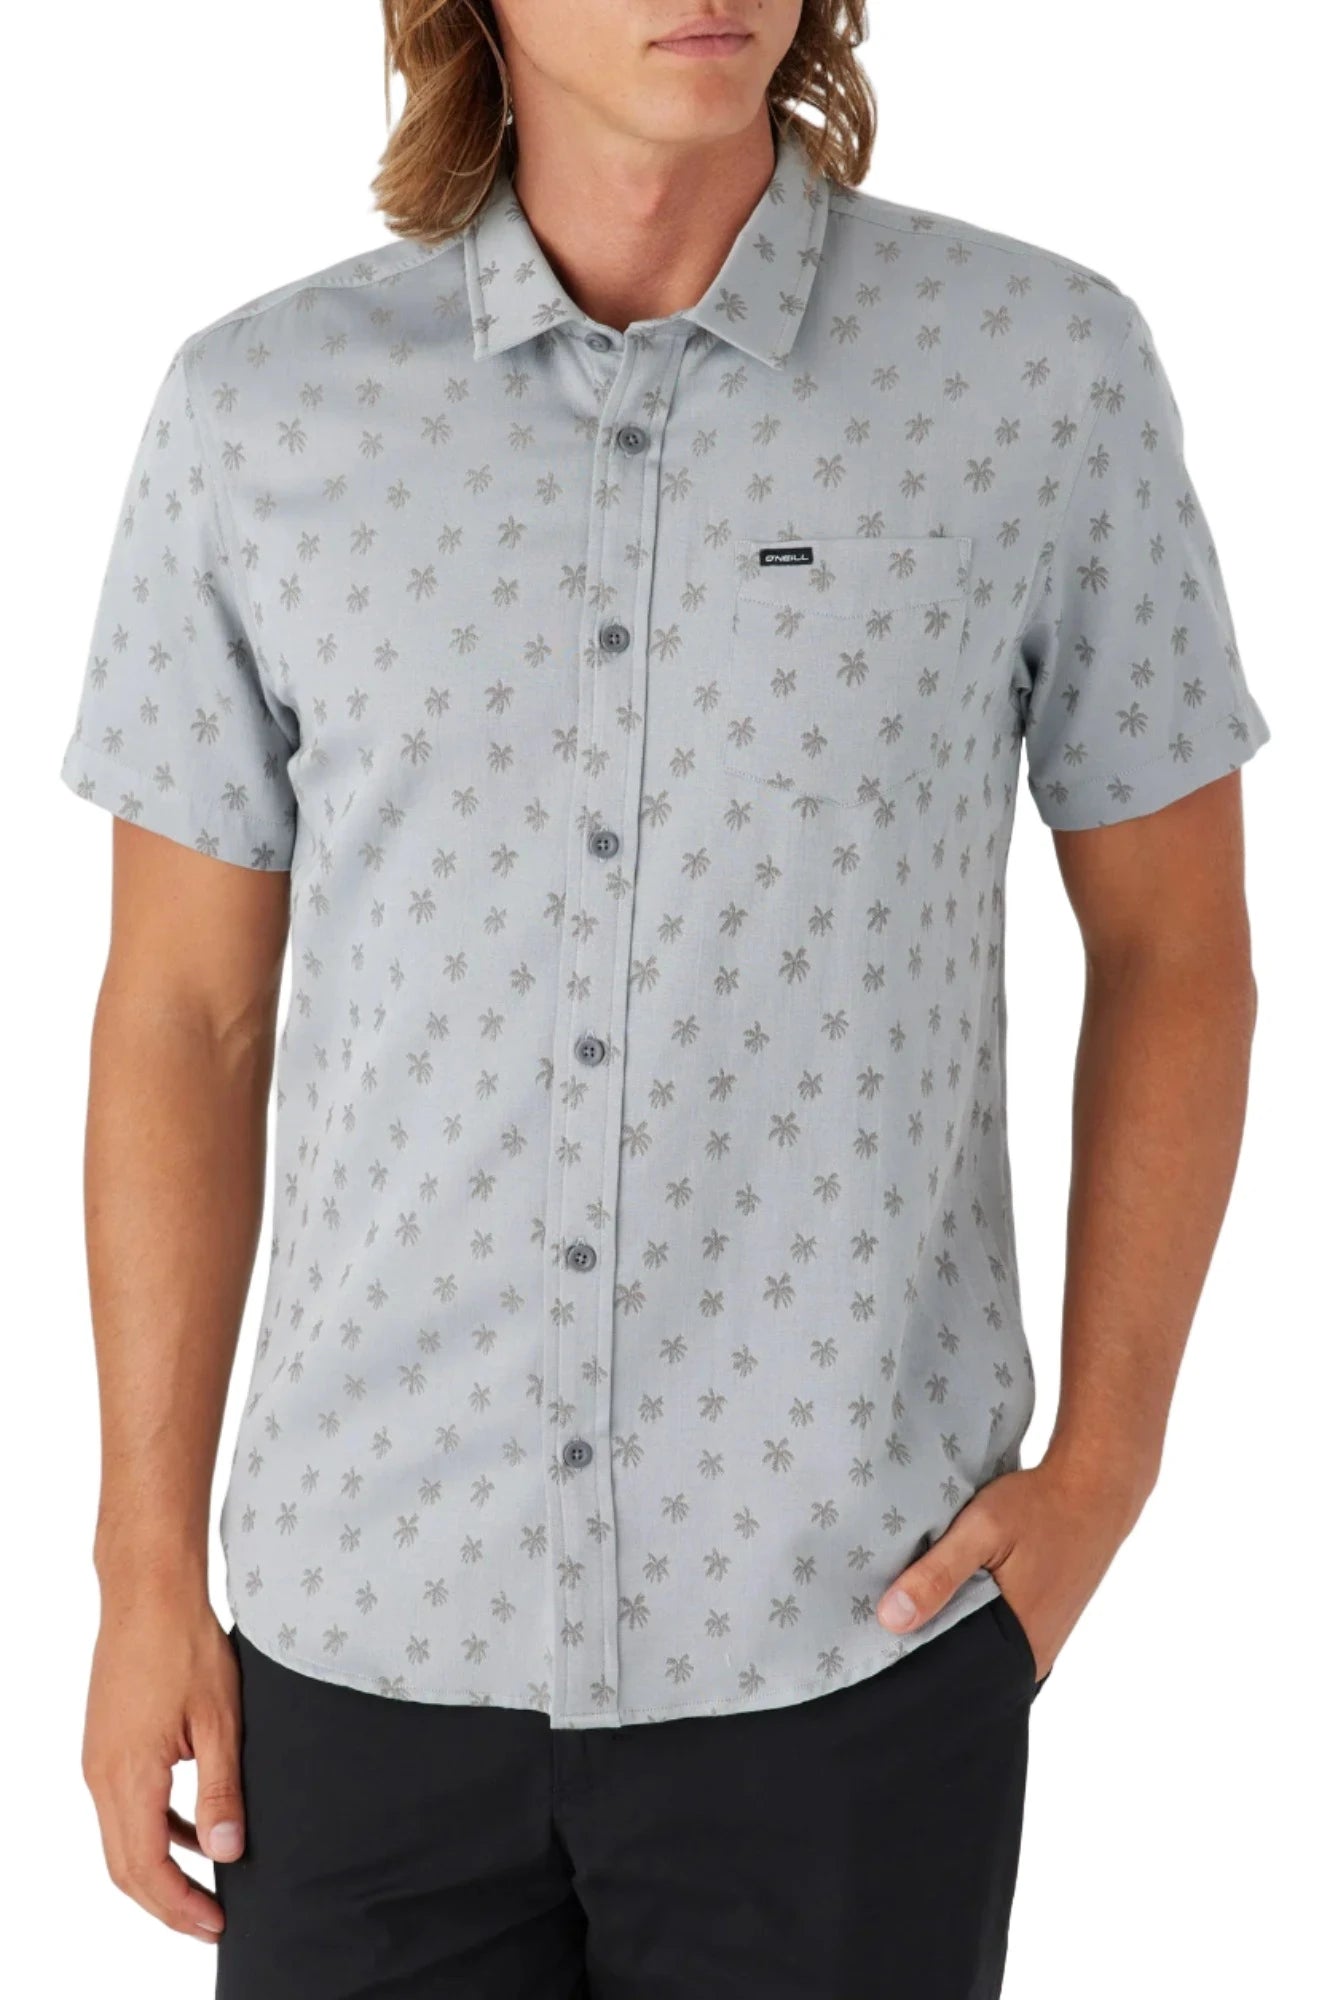 O'Neill Kayce Woven Button-Up Shirt